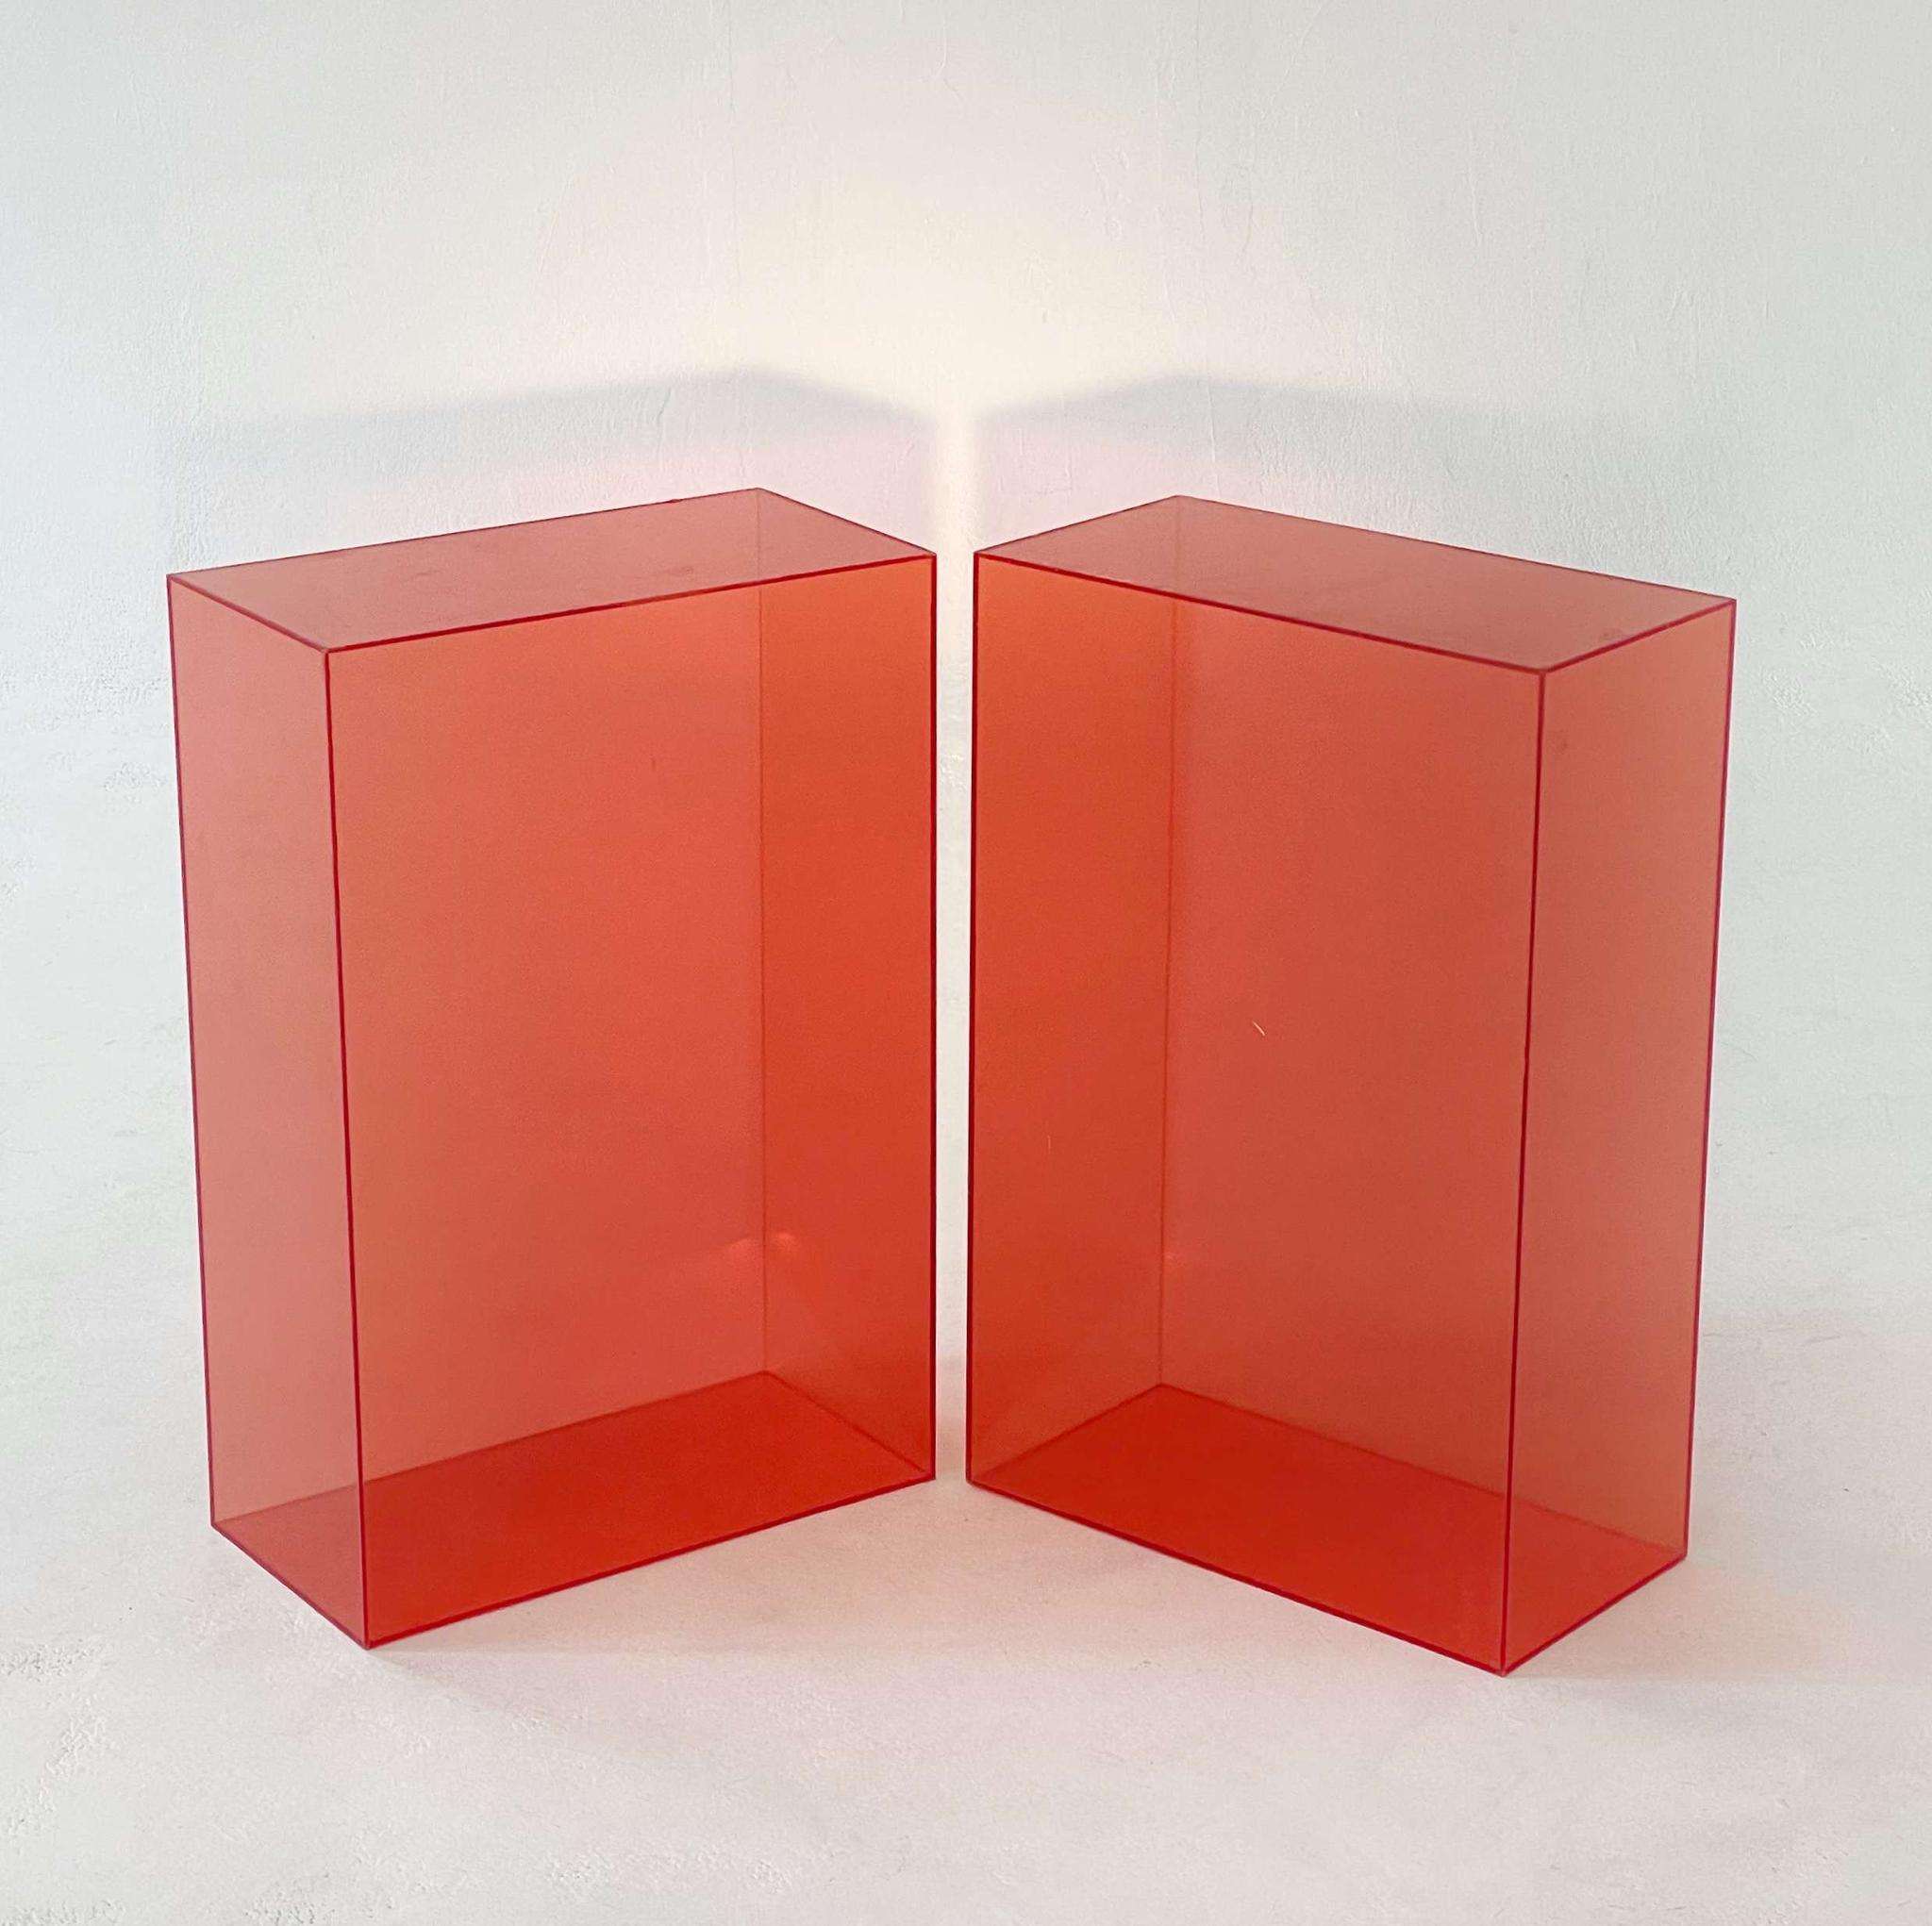 Короба и кубы из оргстекла. Изготовление прозрачных акриловых кубов и коробов для моделей на заказ